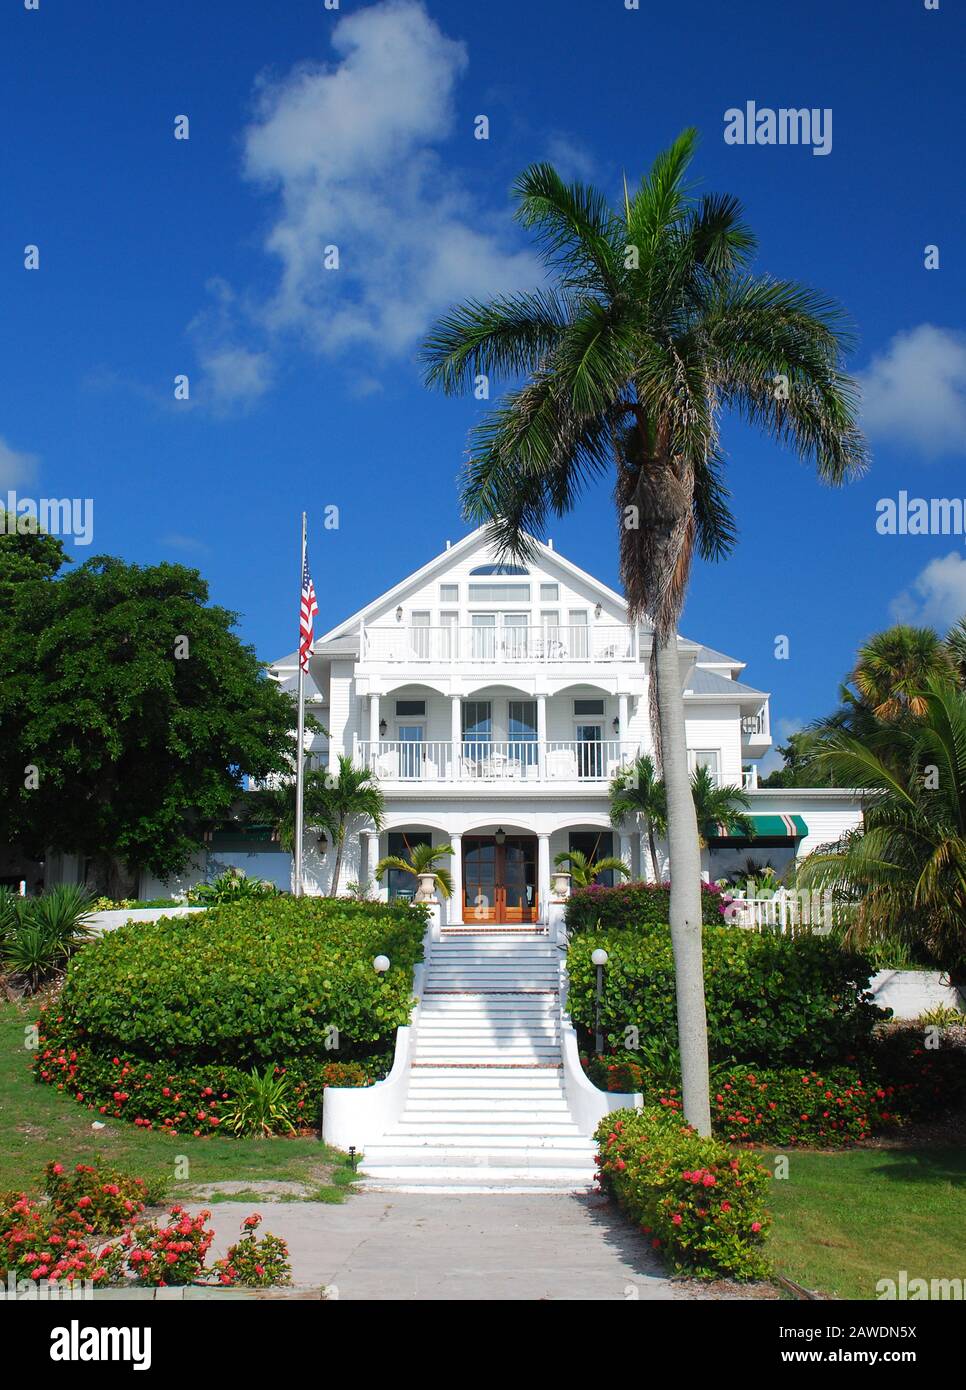 Historique collier Inn, sur l'île d'Useppa, une île privée réservée aux  membres dans le sud de la Floride Photo Stock - Alamy